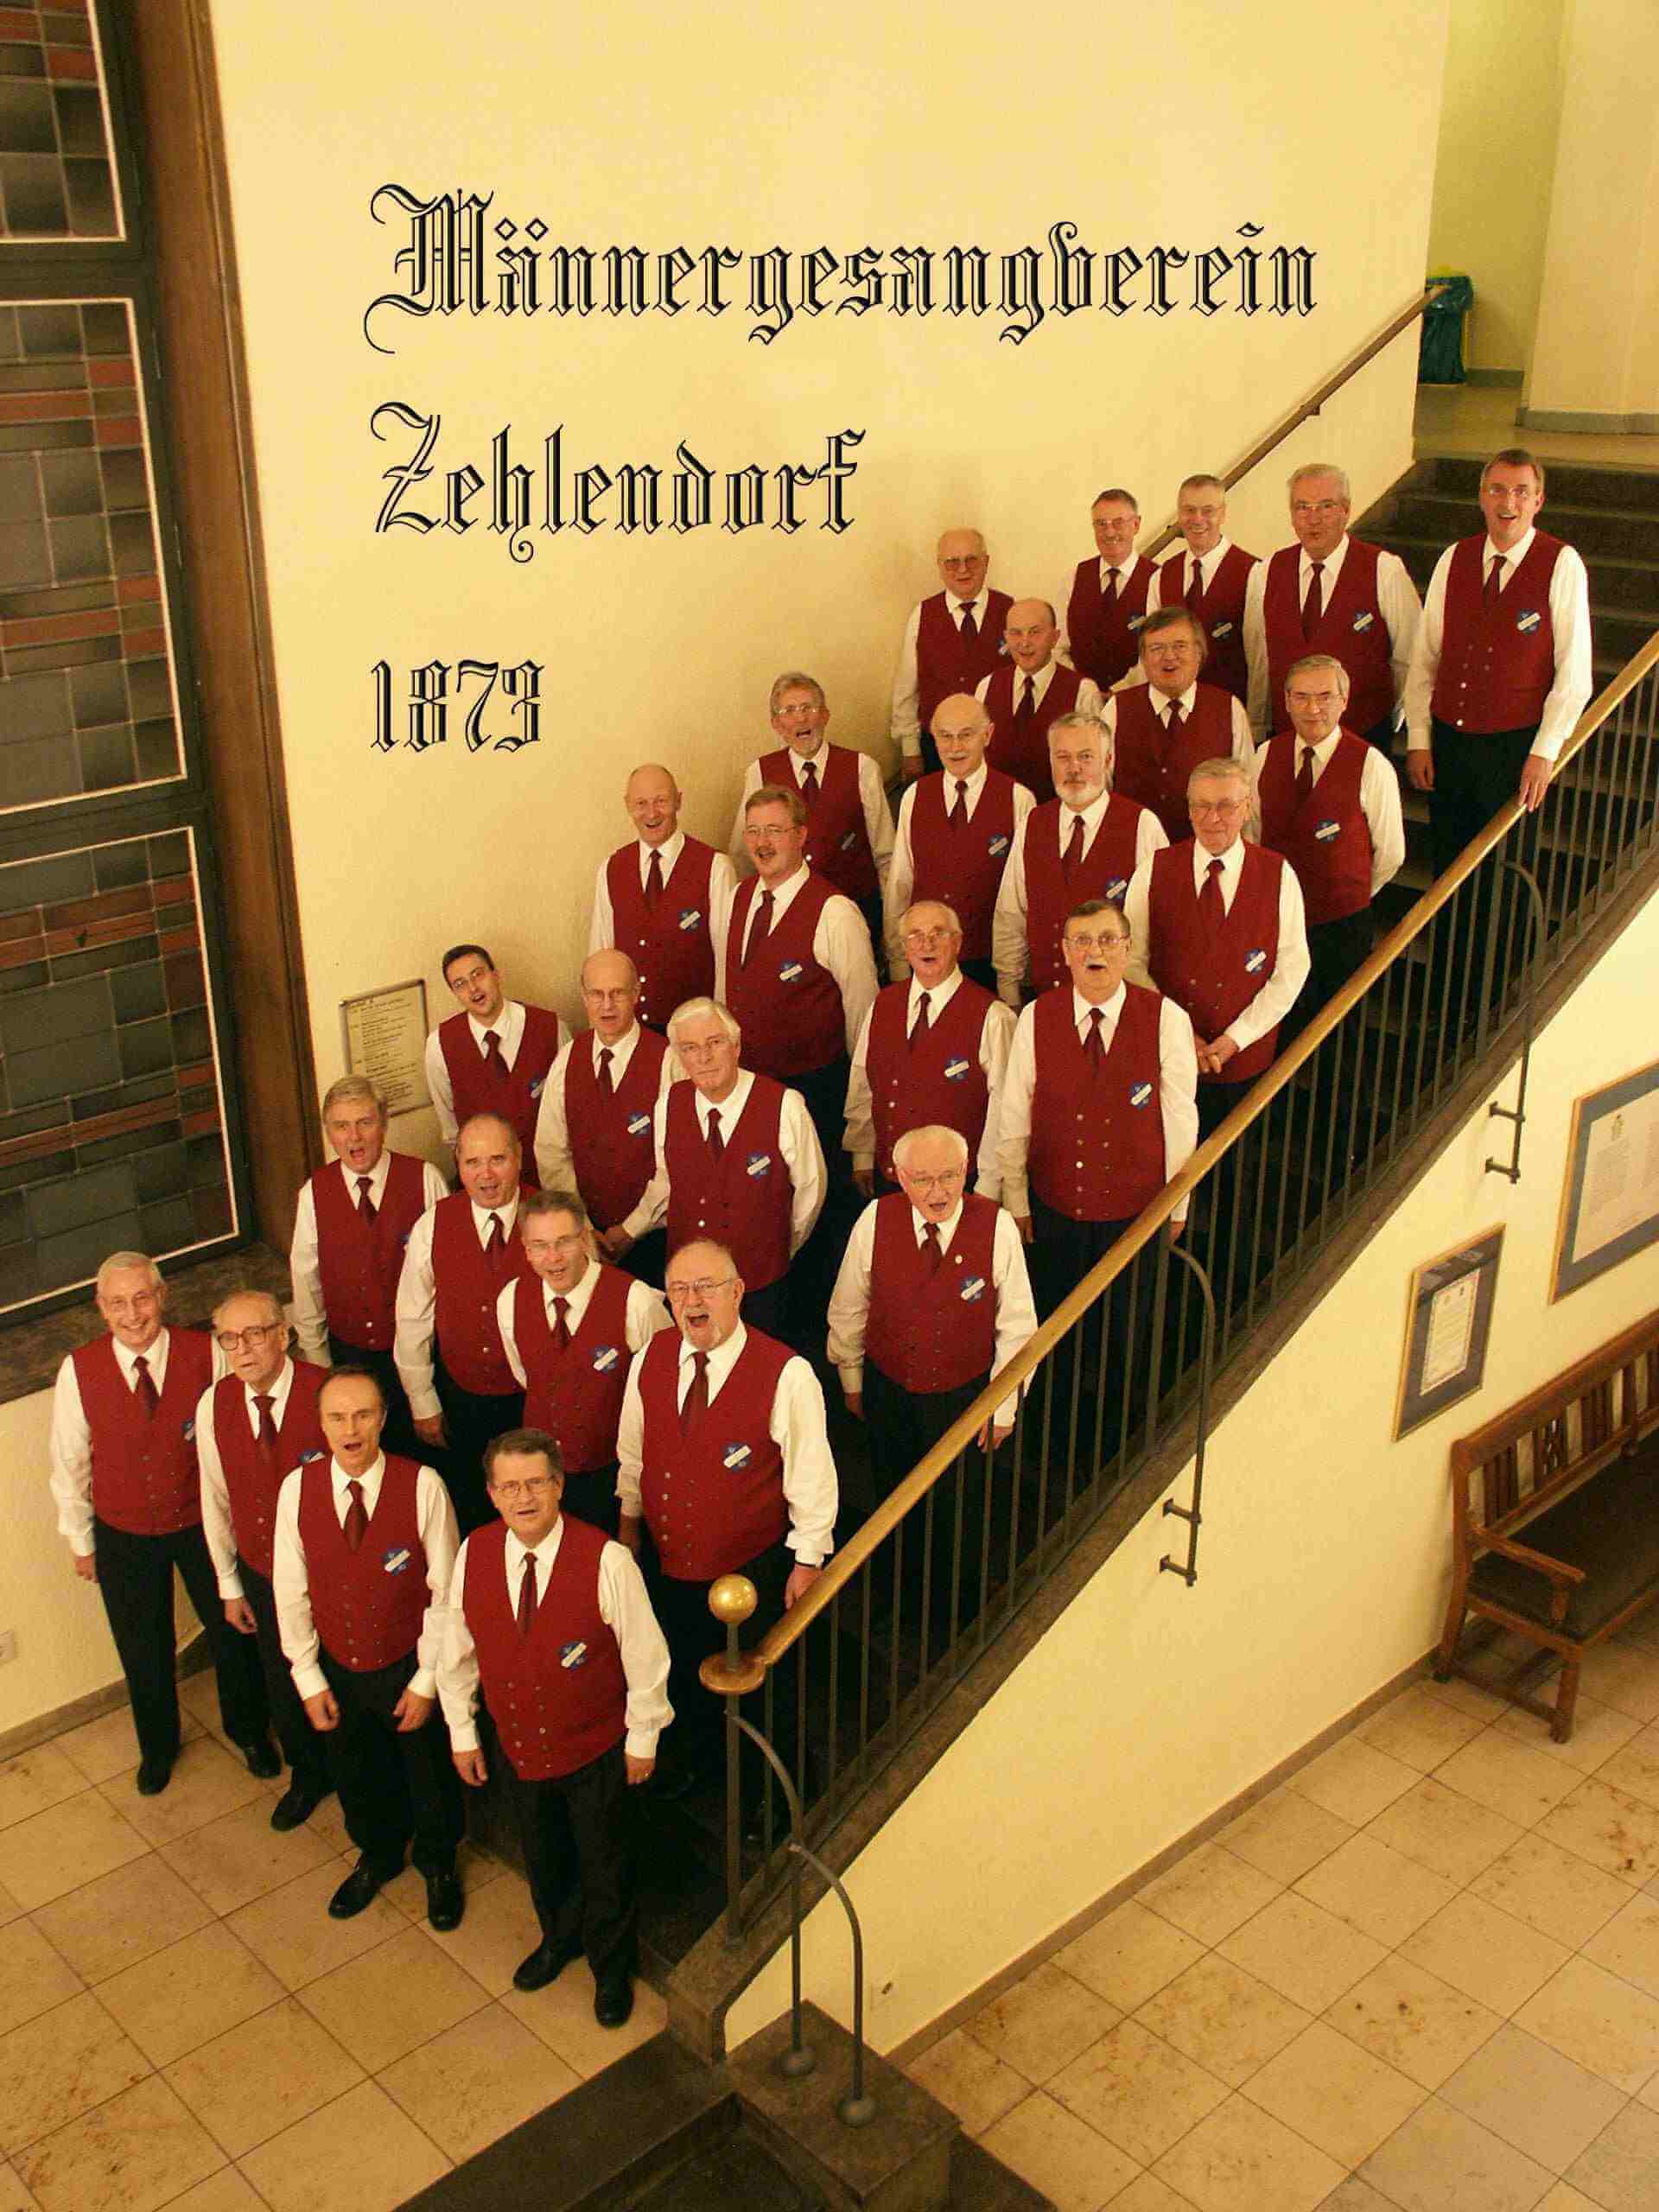 Liederabend mit dem Männergesangsverein Zehlendorf 1873